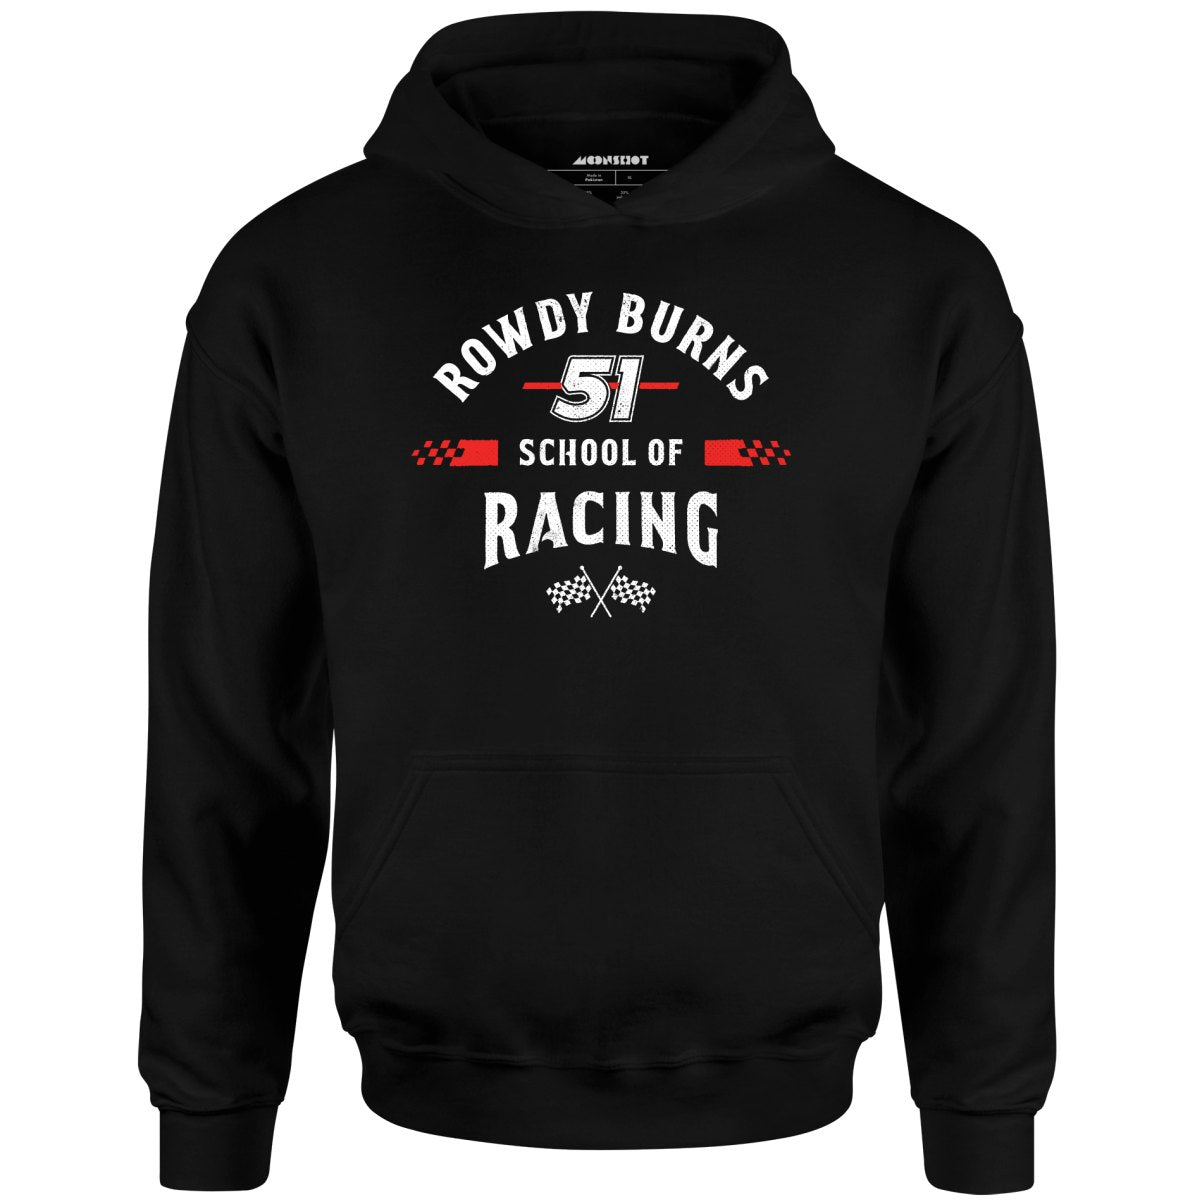 Rowdy Burns School of Racing - Unisex Hoodie